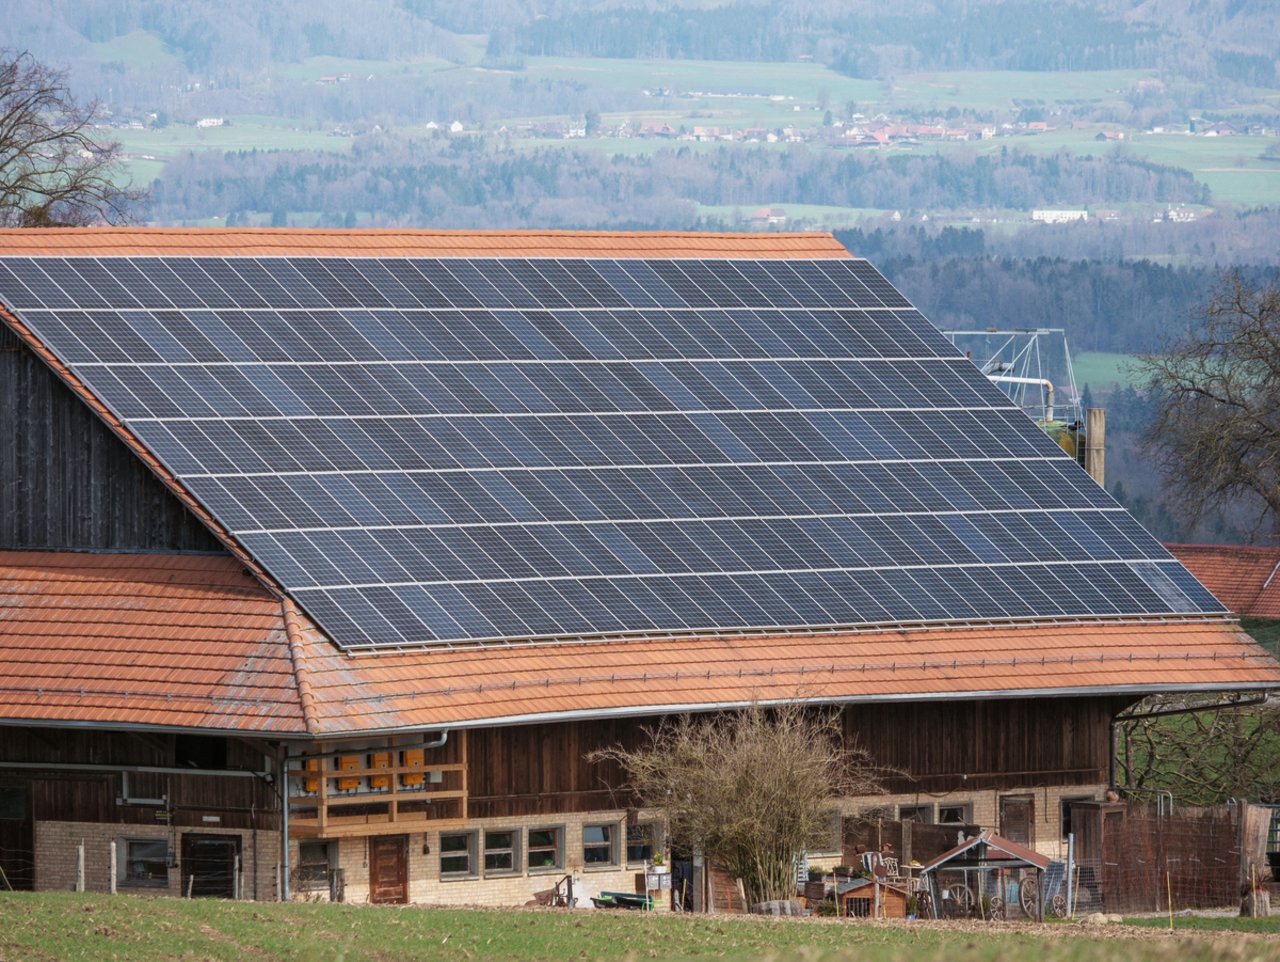 Typisches Beispiel eines Solardaches, bei dem vor allem wirtschaftliche und kaum ästhetische Faktoren beachtet wurden. Bild: David Eppenberger